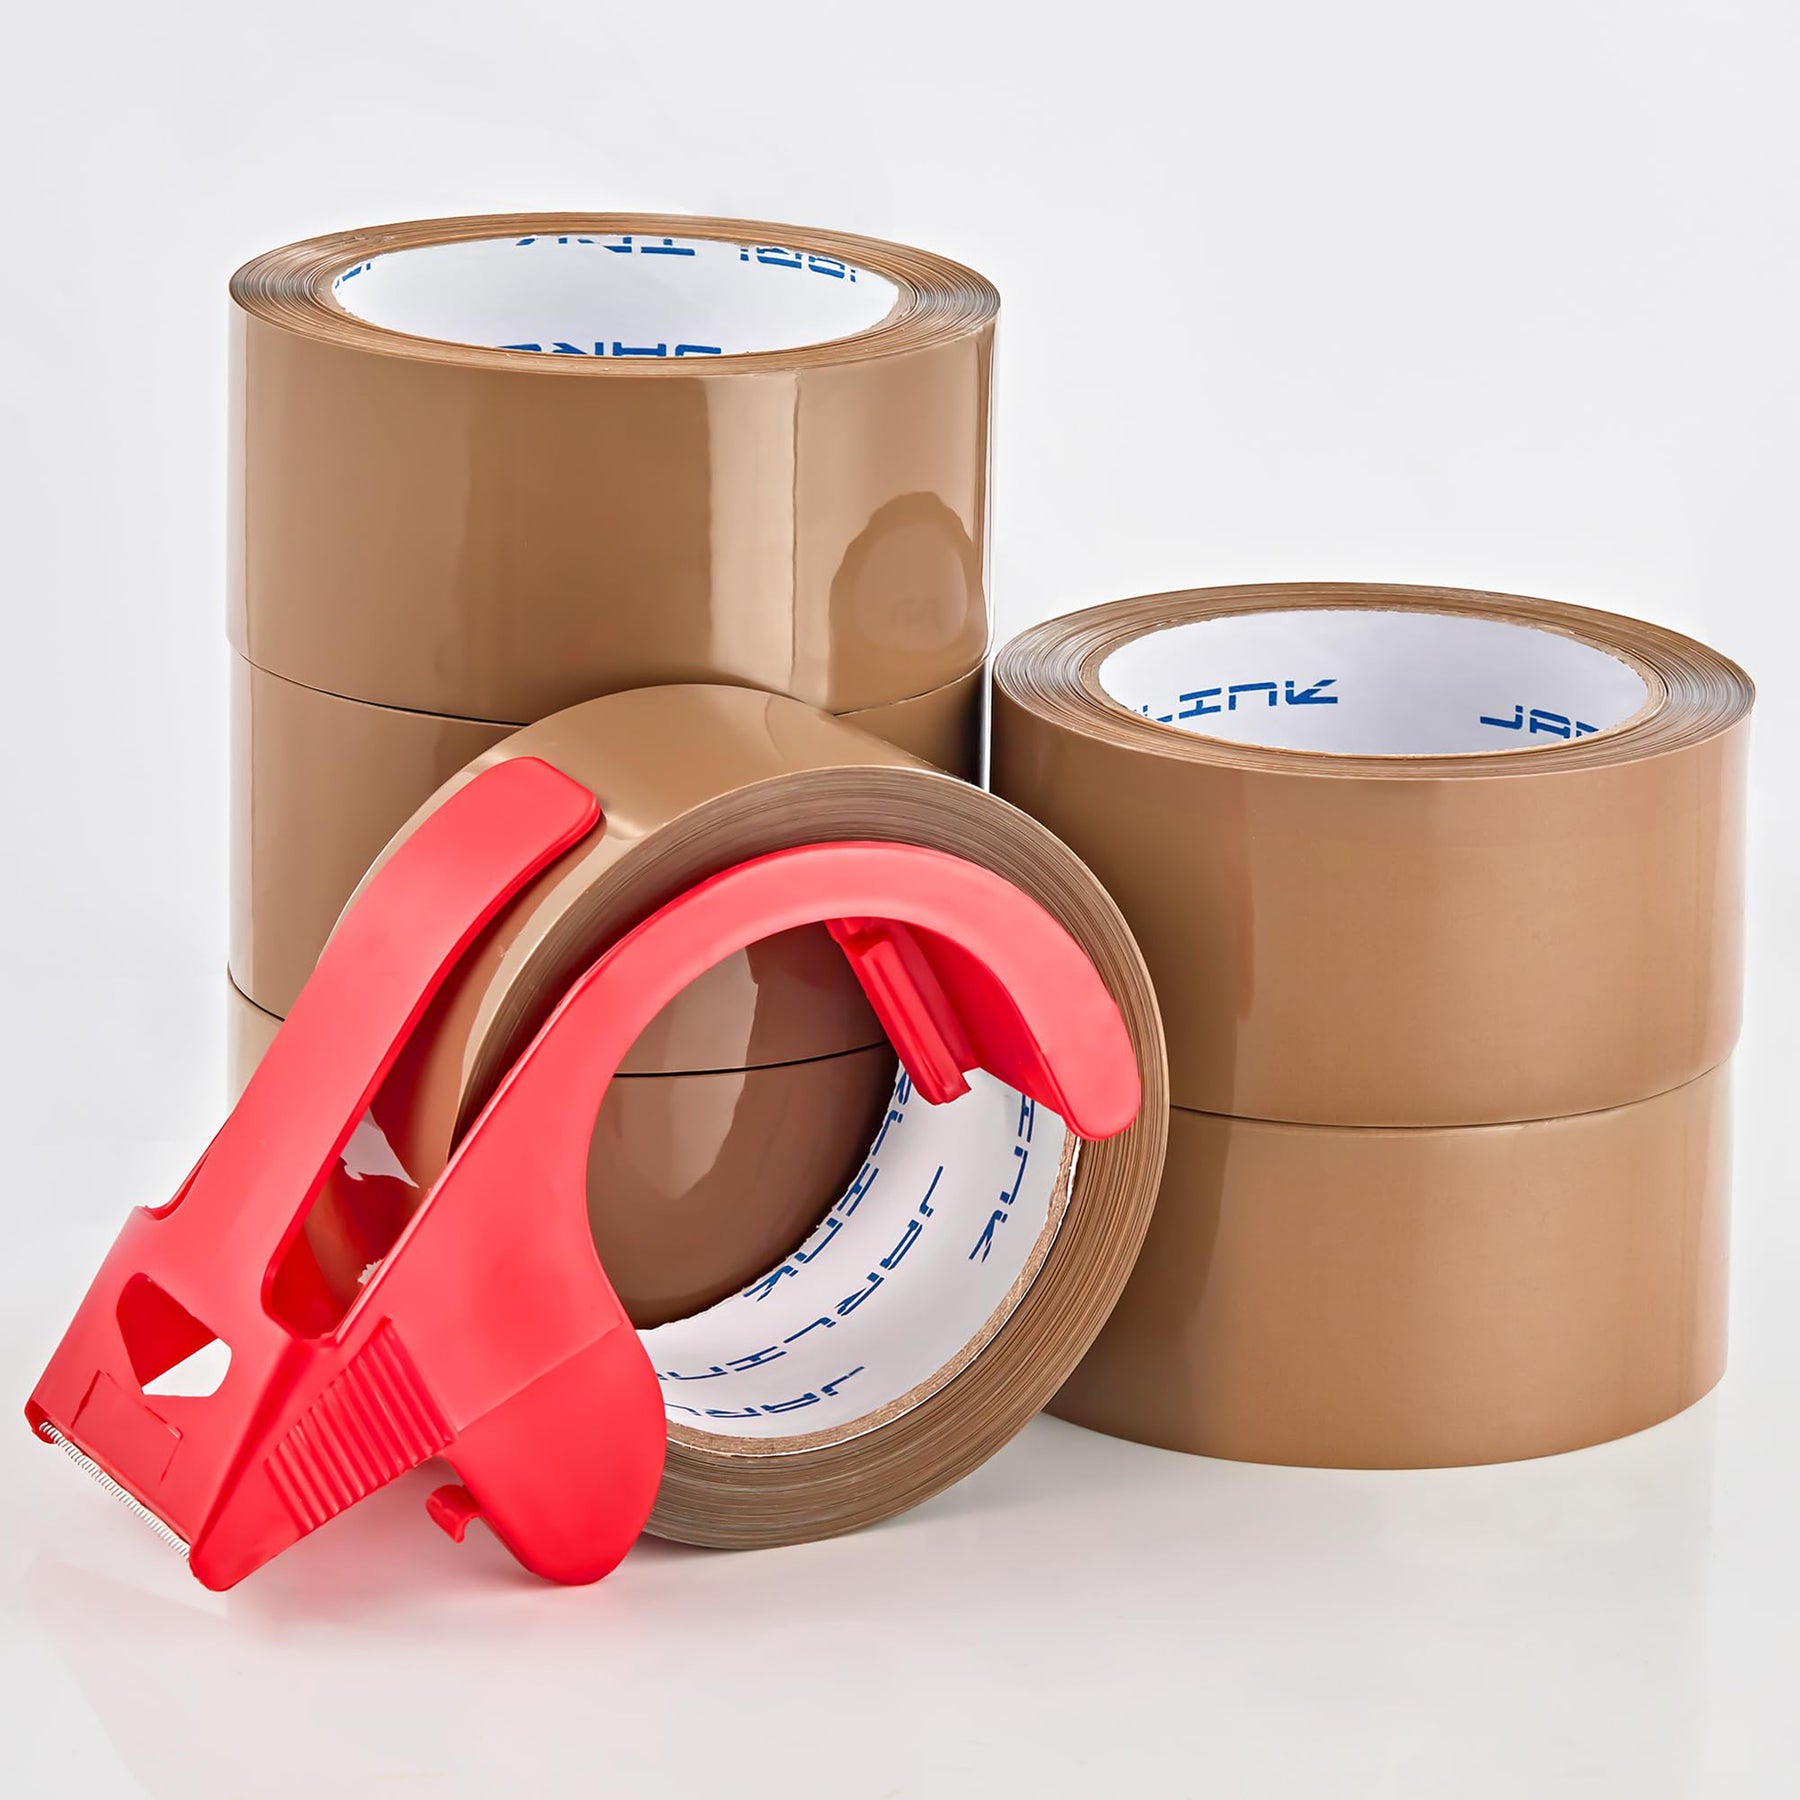 3 x 60-yard IPG Brown Packaging Tape - 16 Rolls